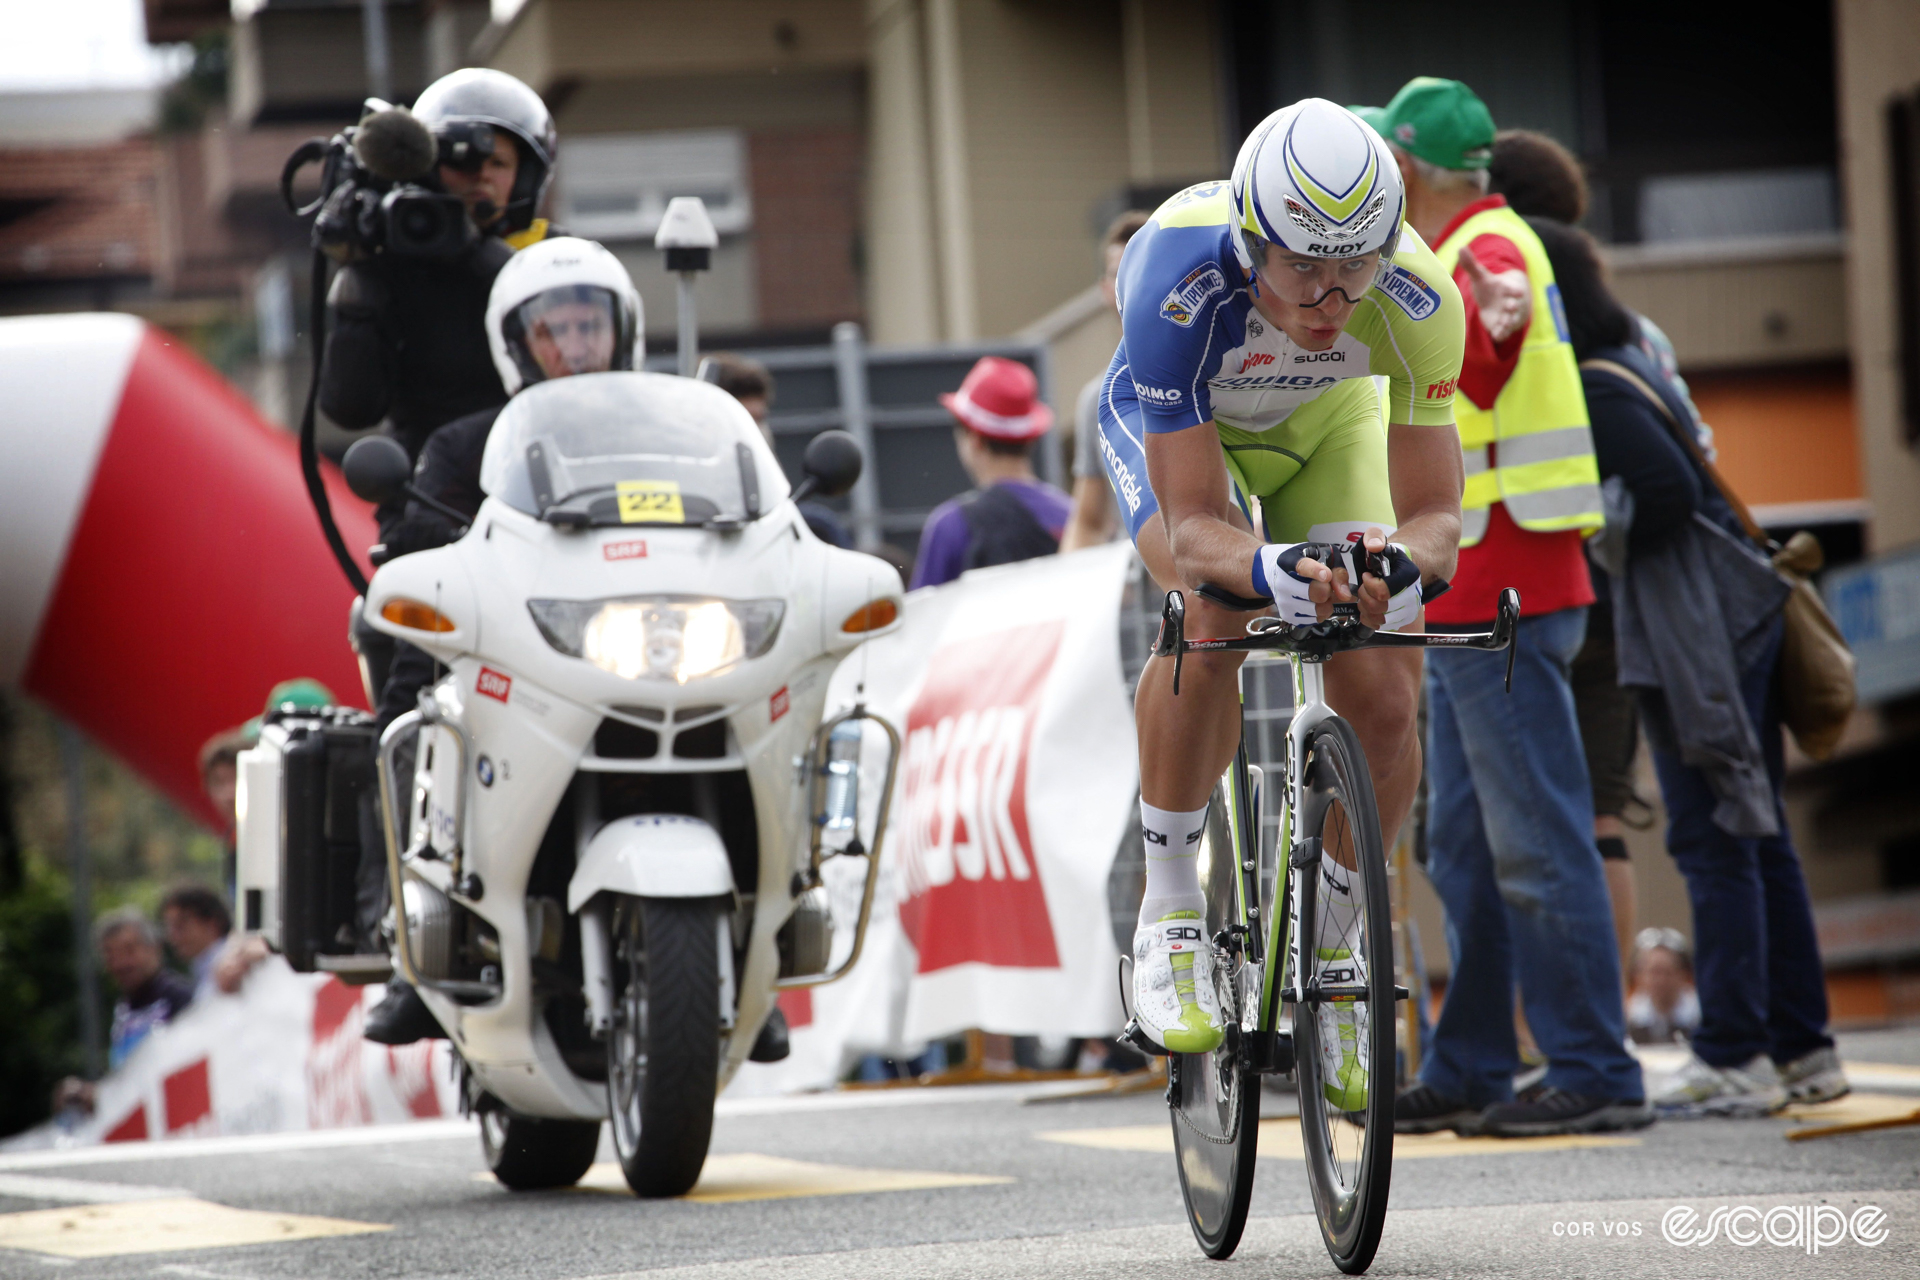 Peter Sagan on his time trial bike, wearing an aero helmet, looking ahead with determination.